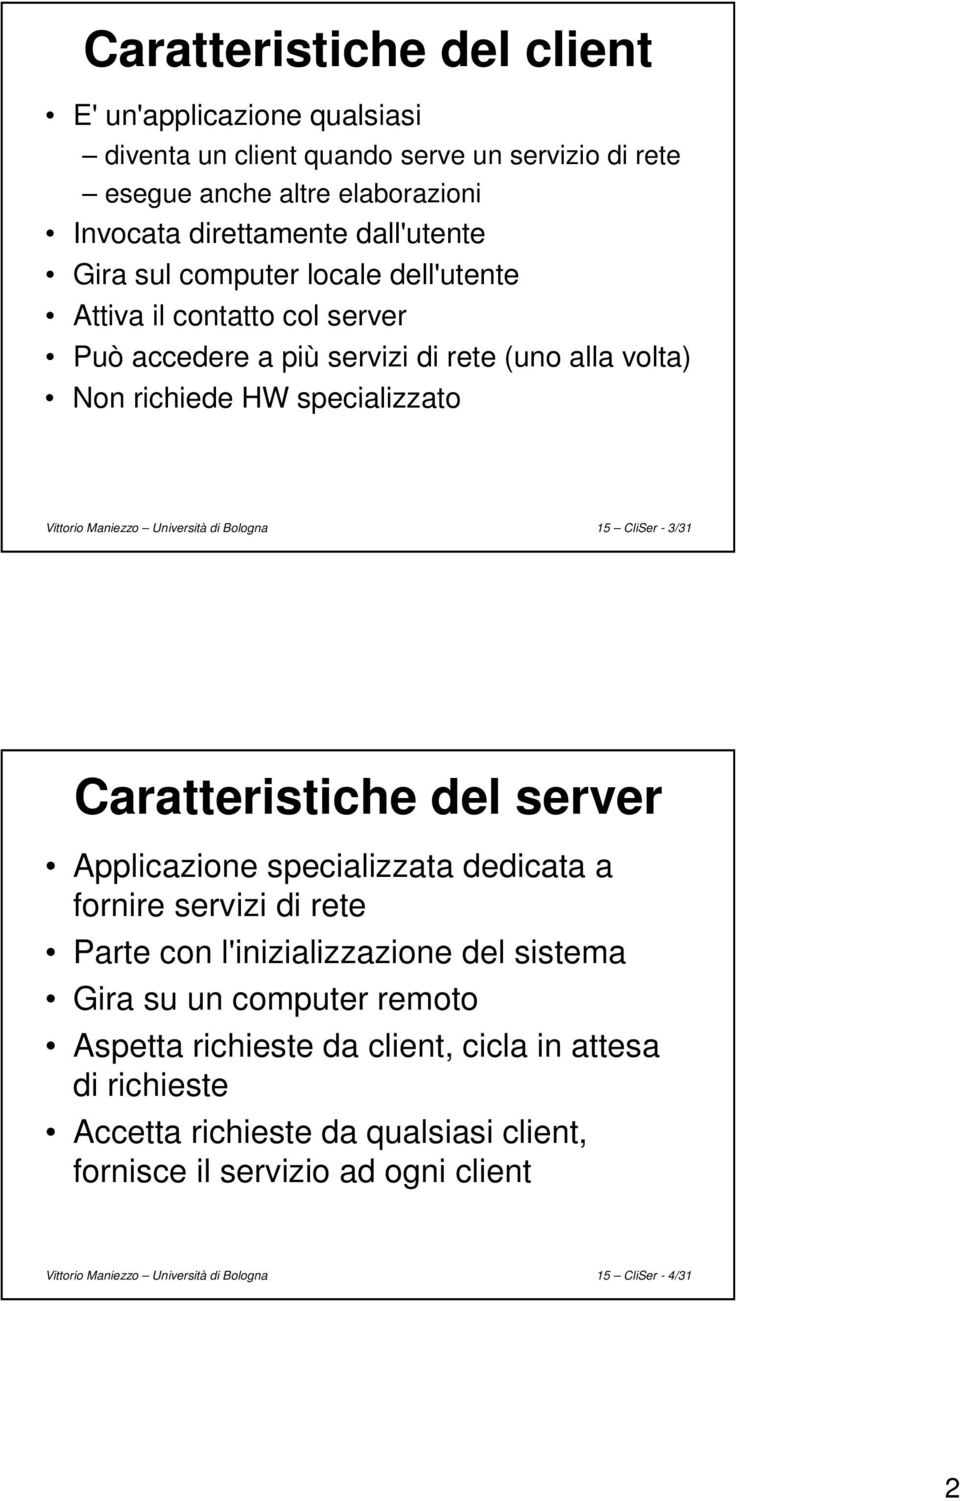 15 CliSer - 3/31 Caratteristiche del server Applicazione specializzata dedicata a fornire servizi di rete Parte con l'inizializzazione del sistema Gira su un computer remoto Aspetta